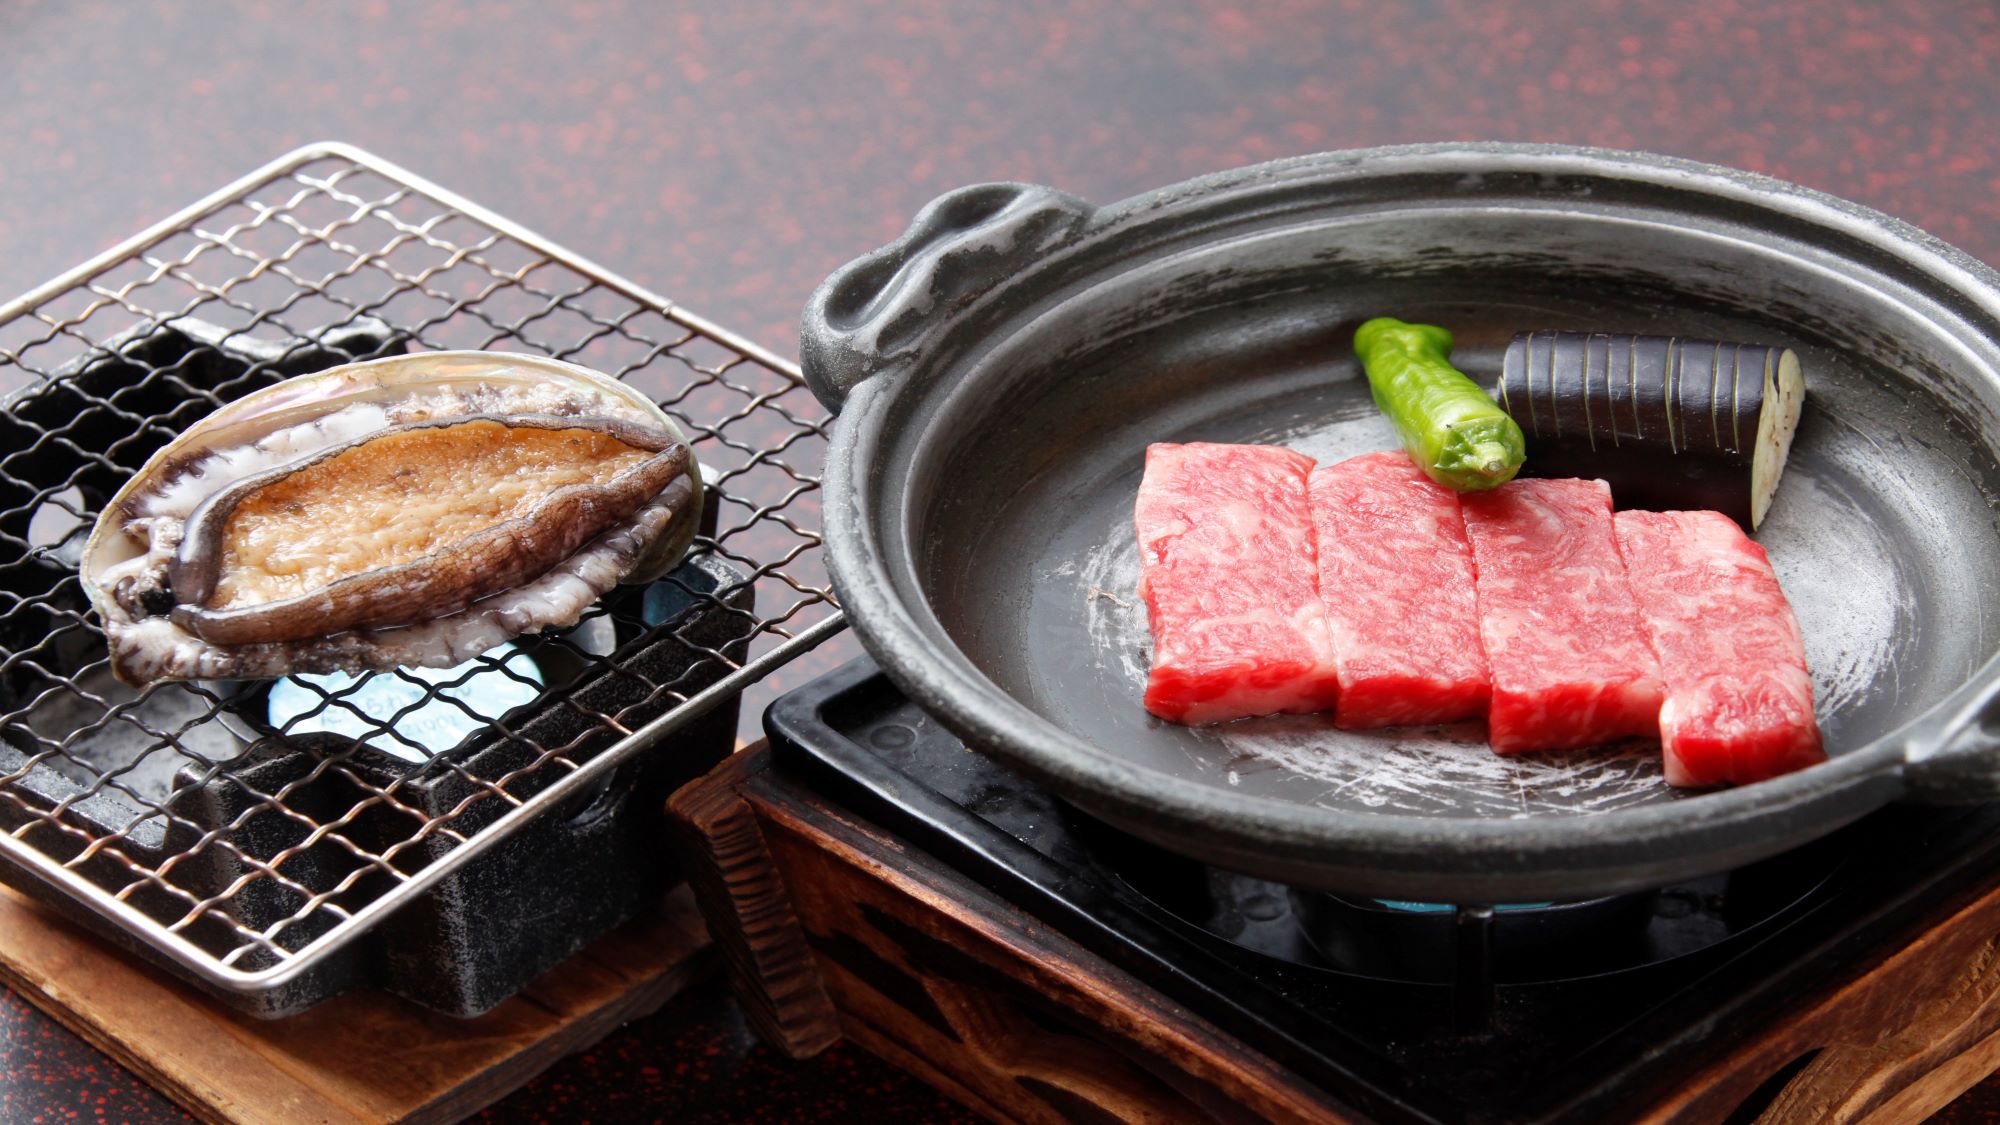 【伊豆海の膳】では、あわび料理又は国産牛ステーキがお選びいただけます